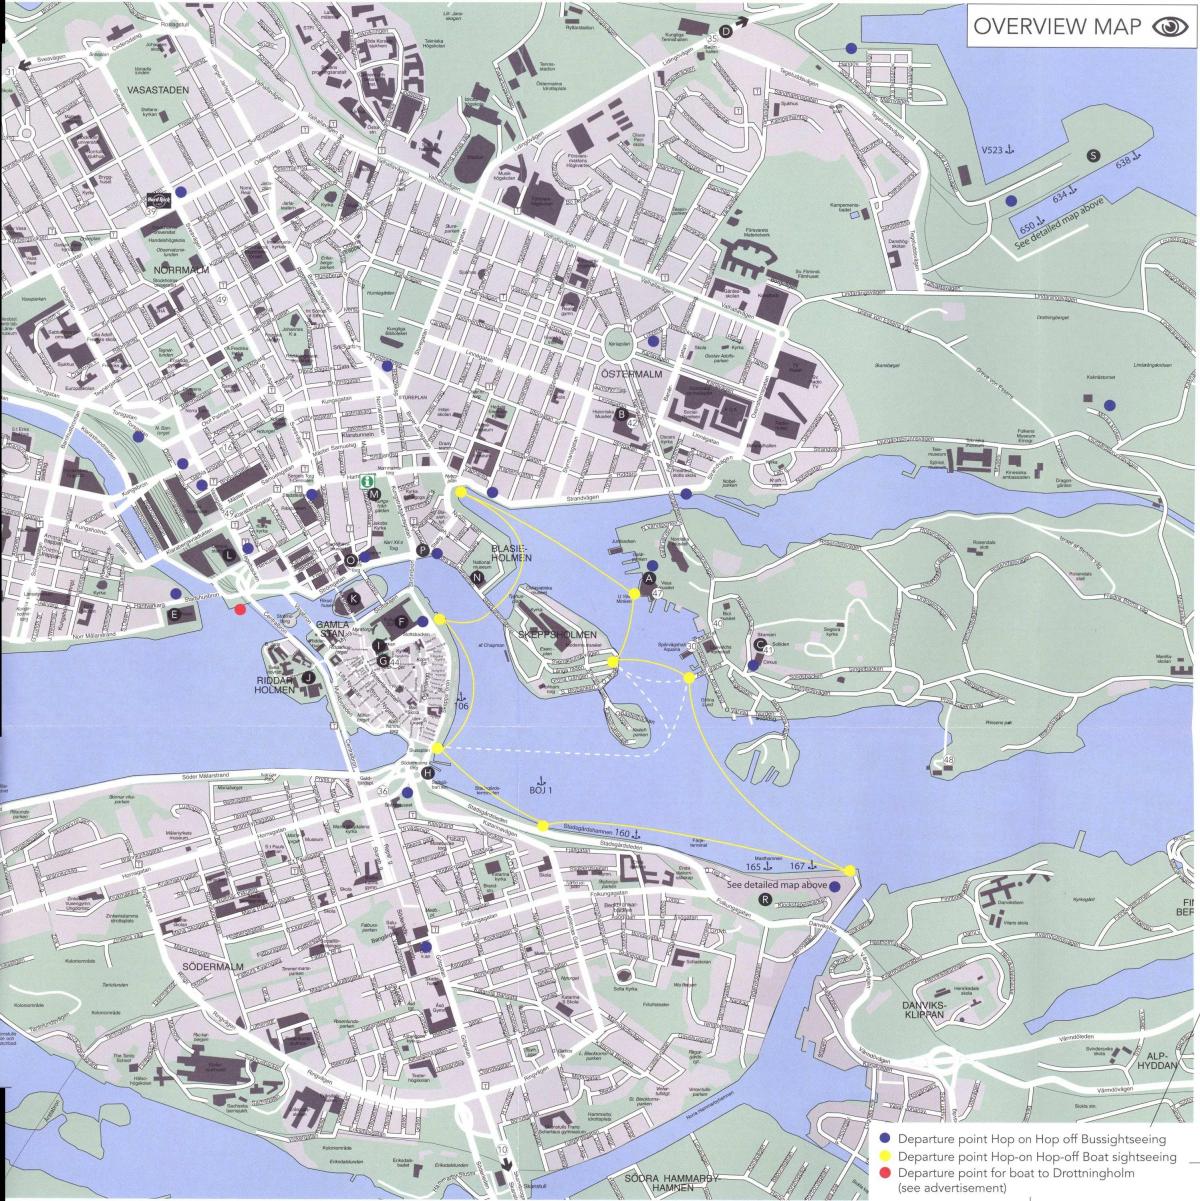 Karte von Stockholm-Zentrum